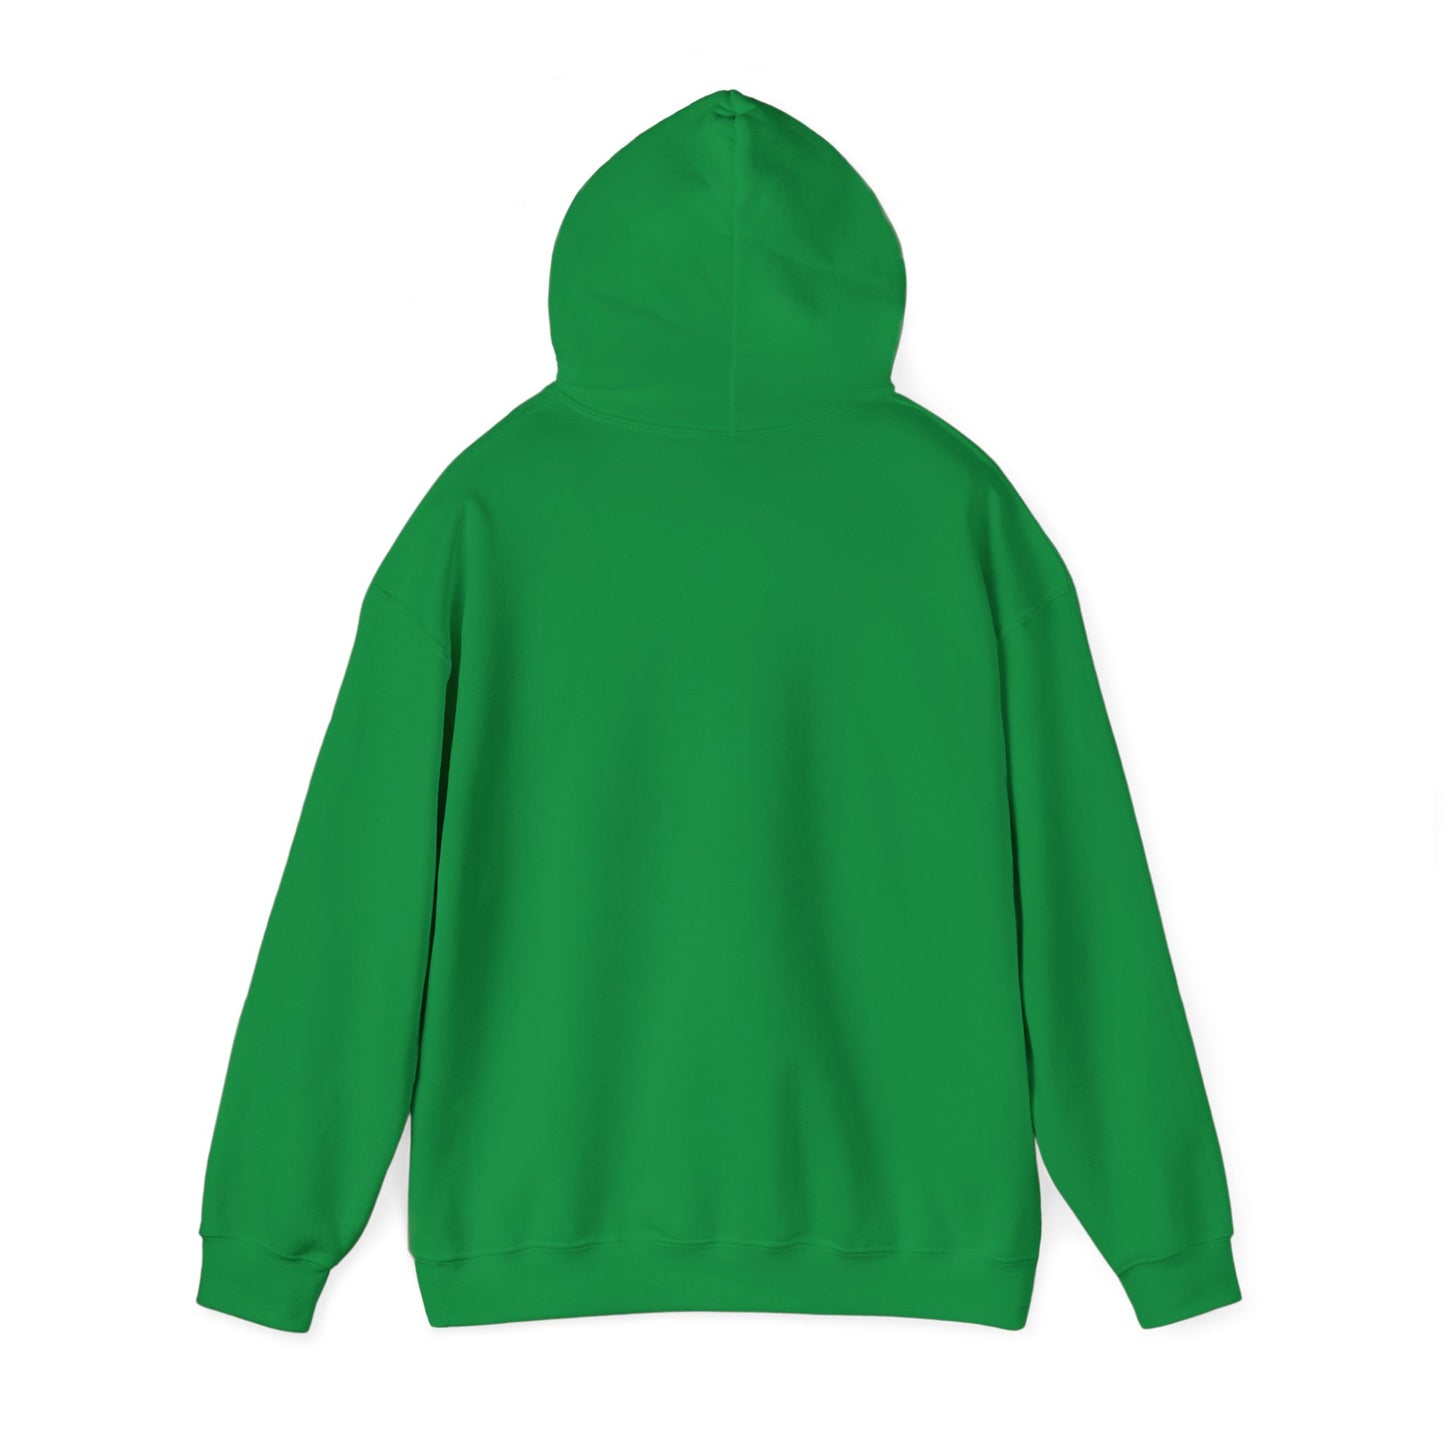 MWA Colored Hooded Sweatshirt